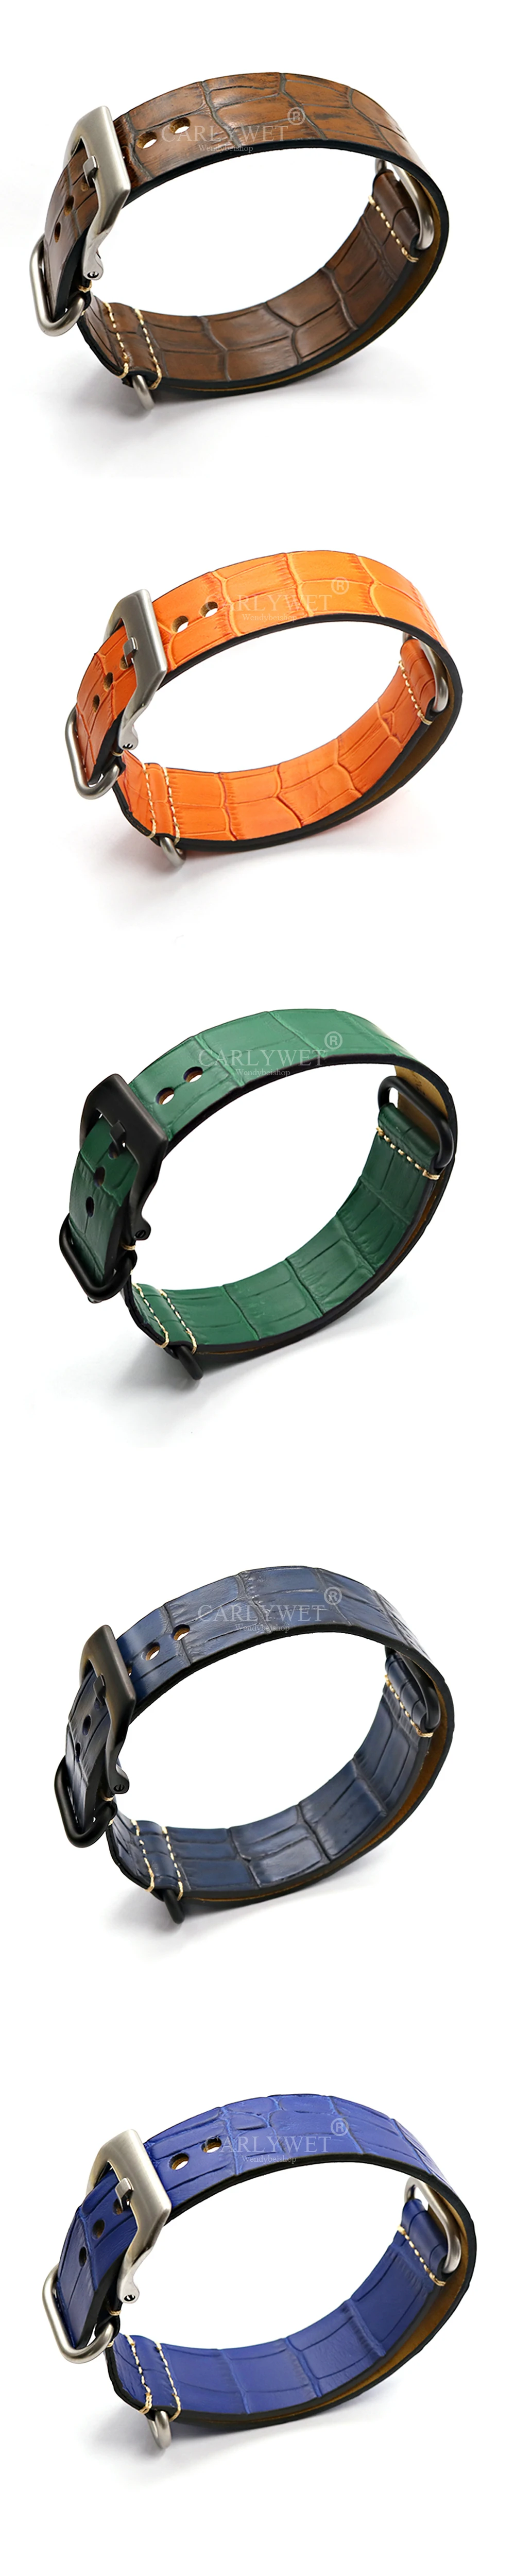 22 24 мм новые винтажные наручные часы кожаный ремешок серебряный матовый винт Пряжка для Nato Zulu кольцо Panerai Luminor Citizen Tudor